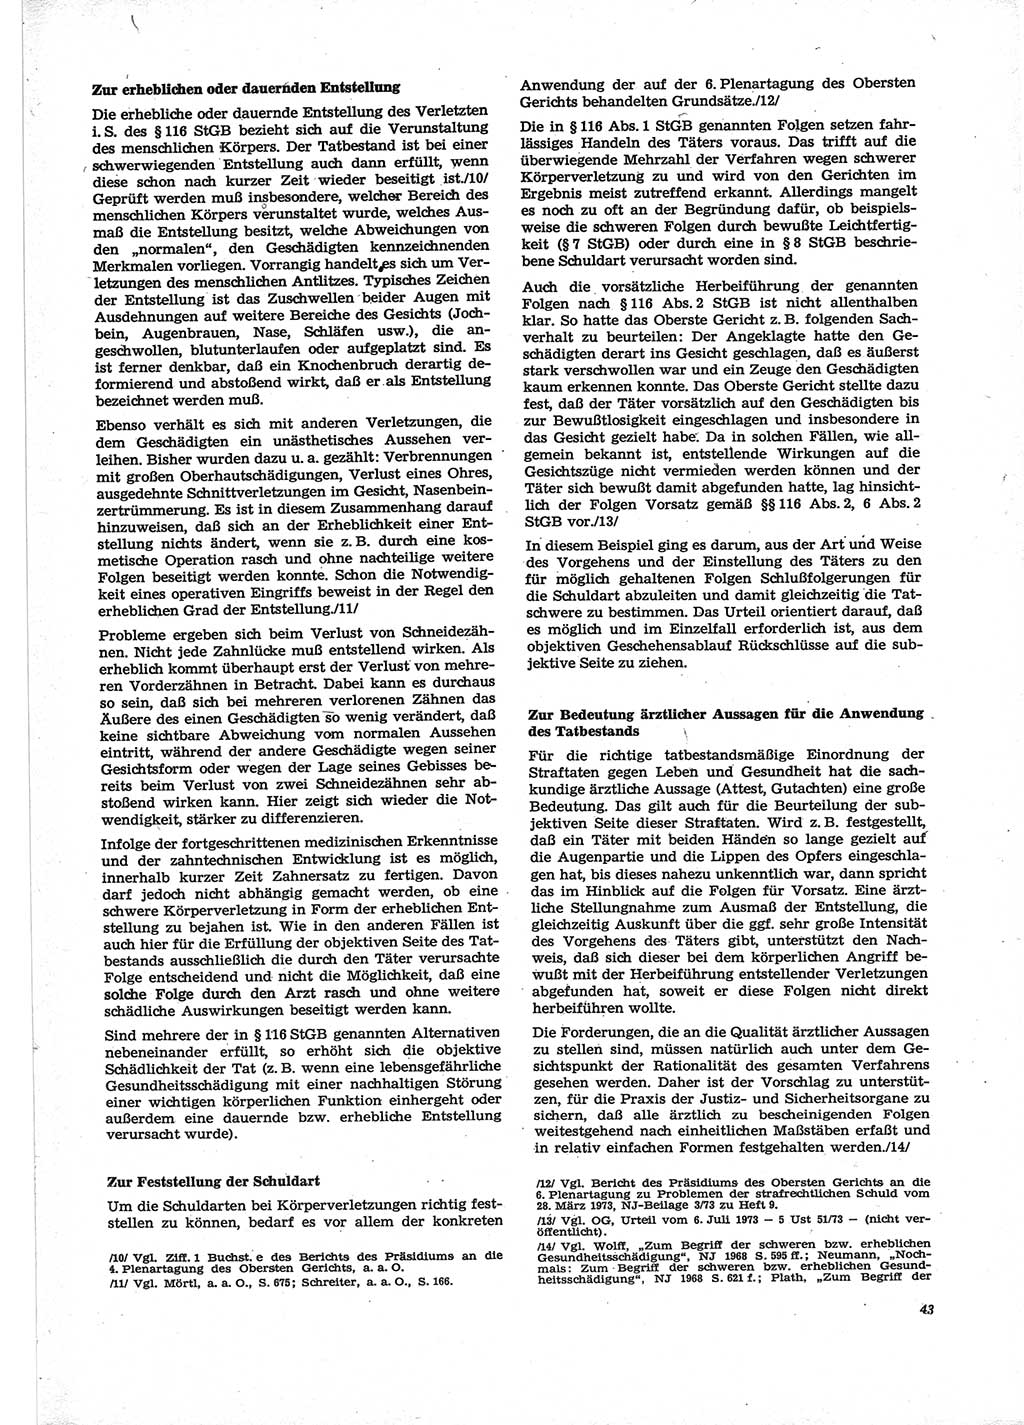 Neue Justiz (NJ), Zeitschrift für Recht und Rechtswissenschaft [Deutsche Demokratische Republik (DDR)], 28. Jahrgang 1974, Seite 43 (NJ DDR 1974, S. 43)